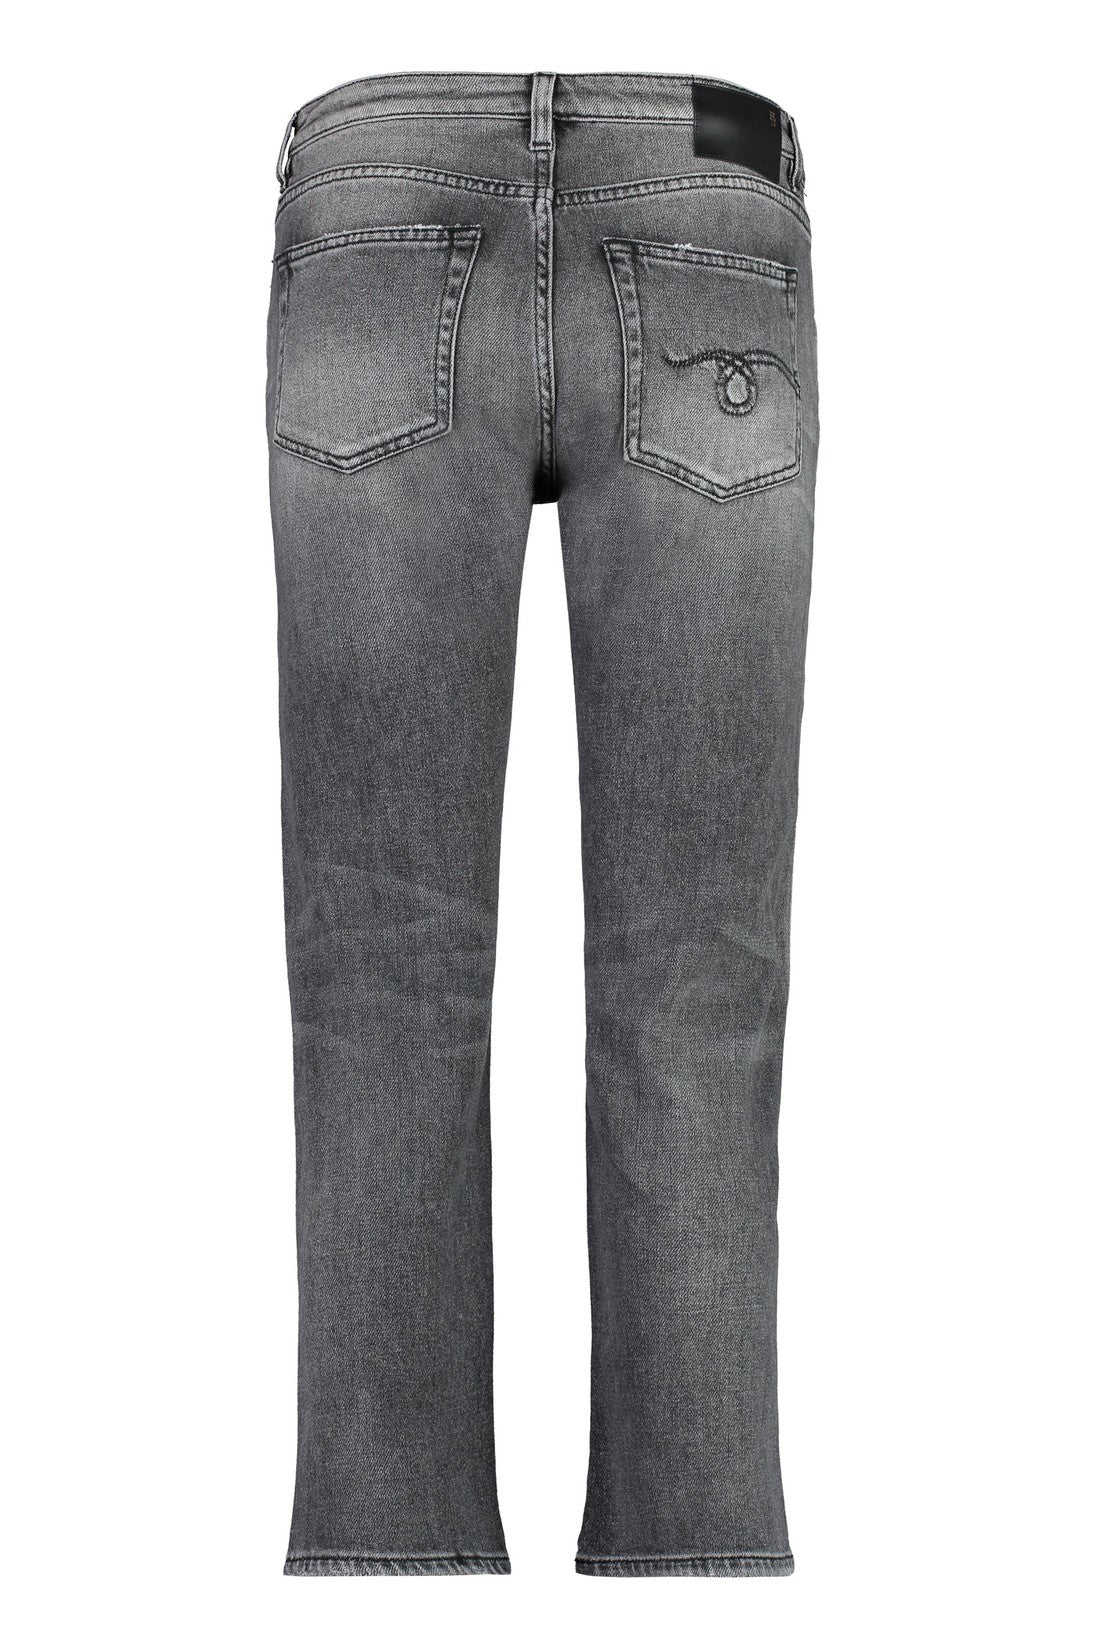 R13-OUTLET-SALE-Boy Straight jeans-ARCHIVIST